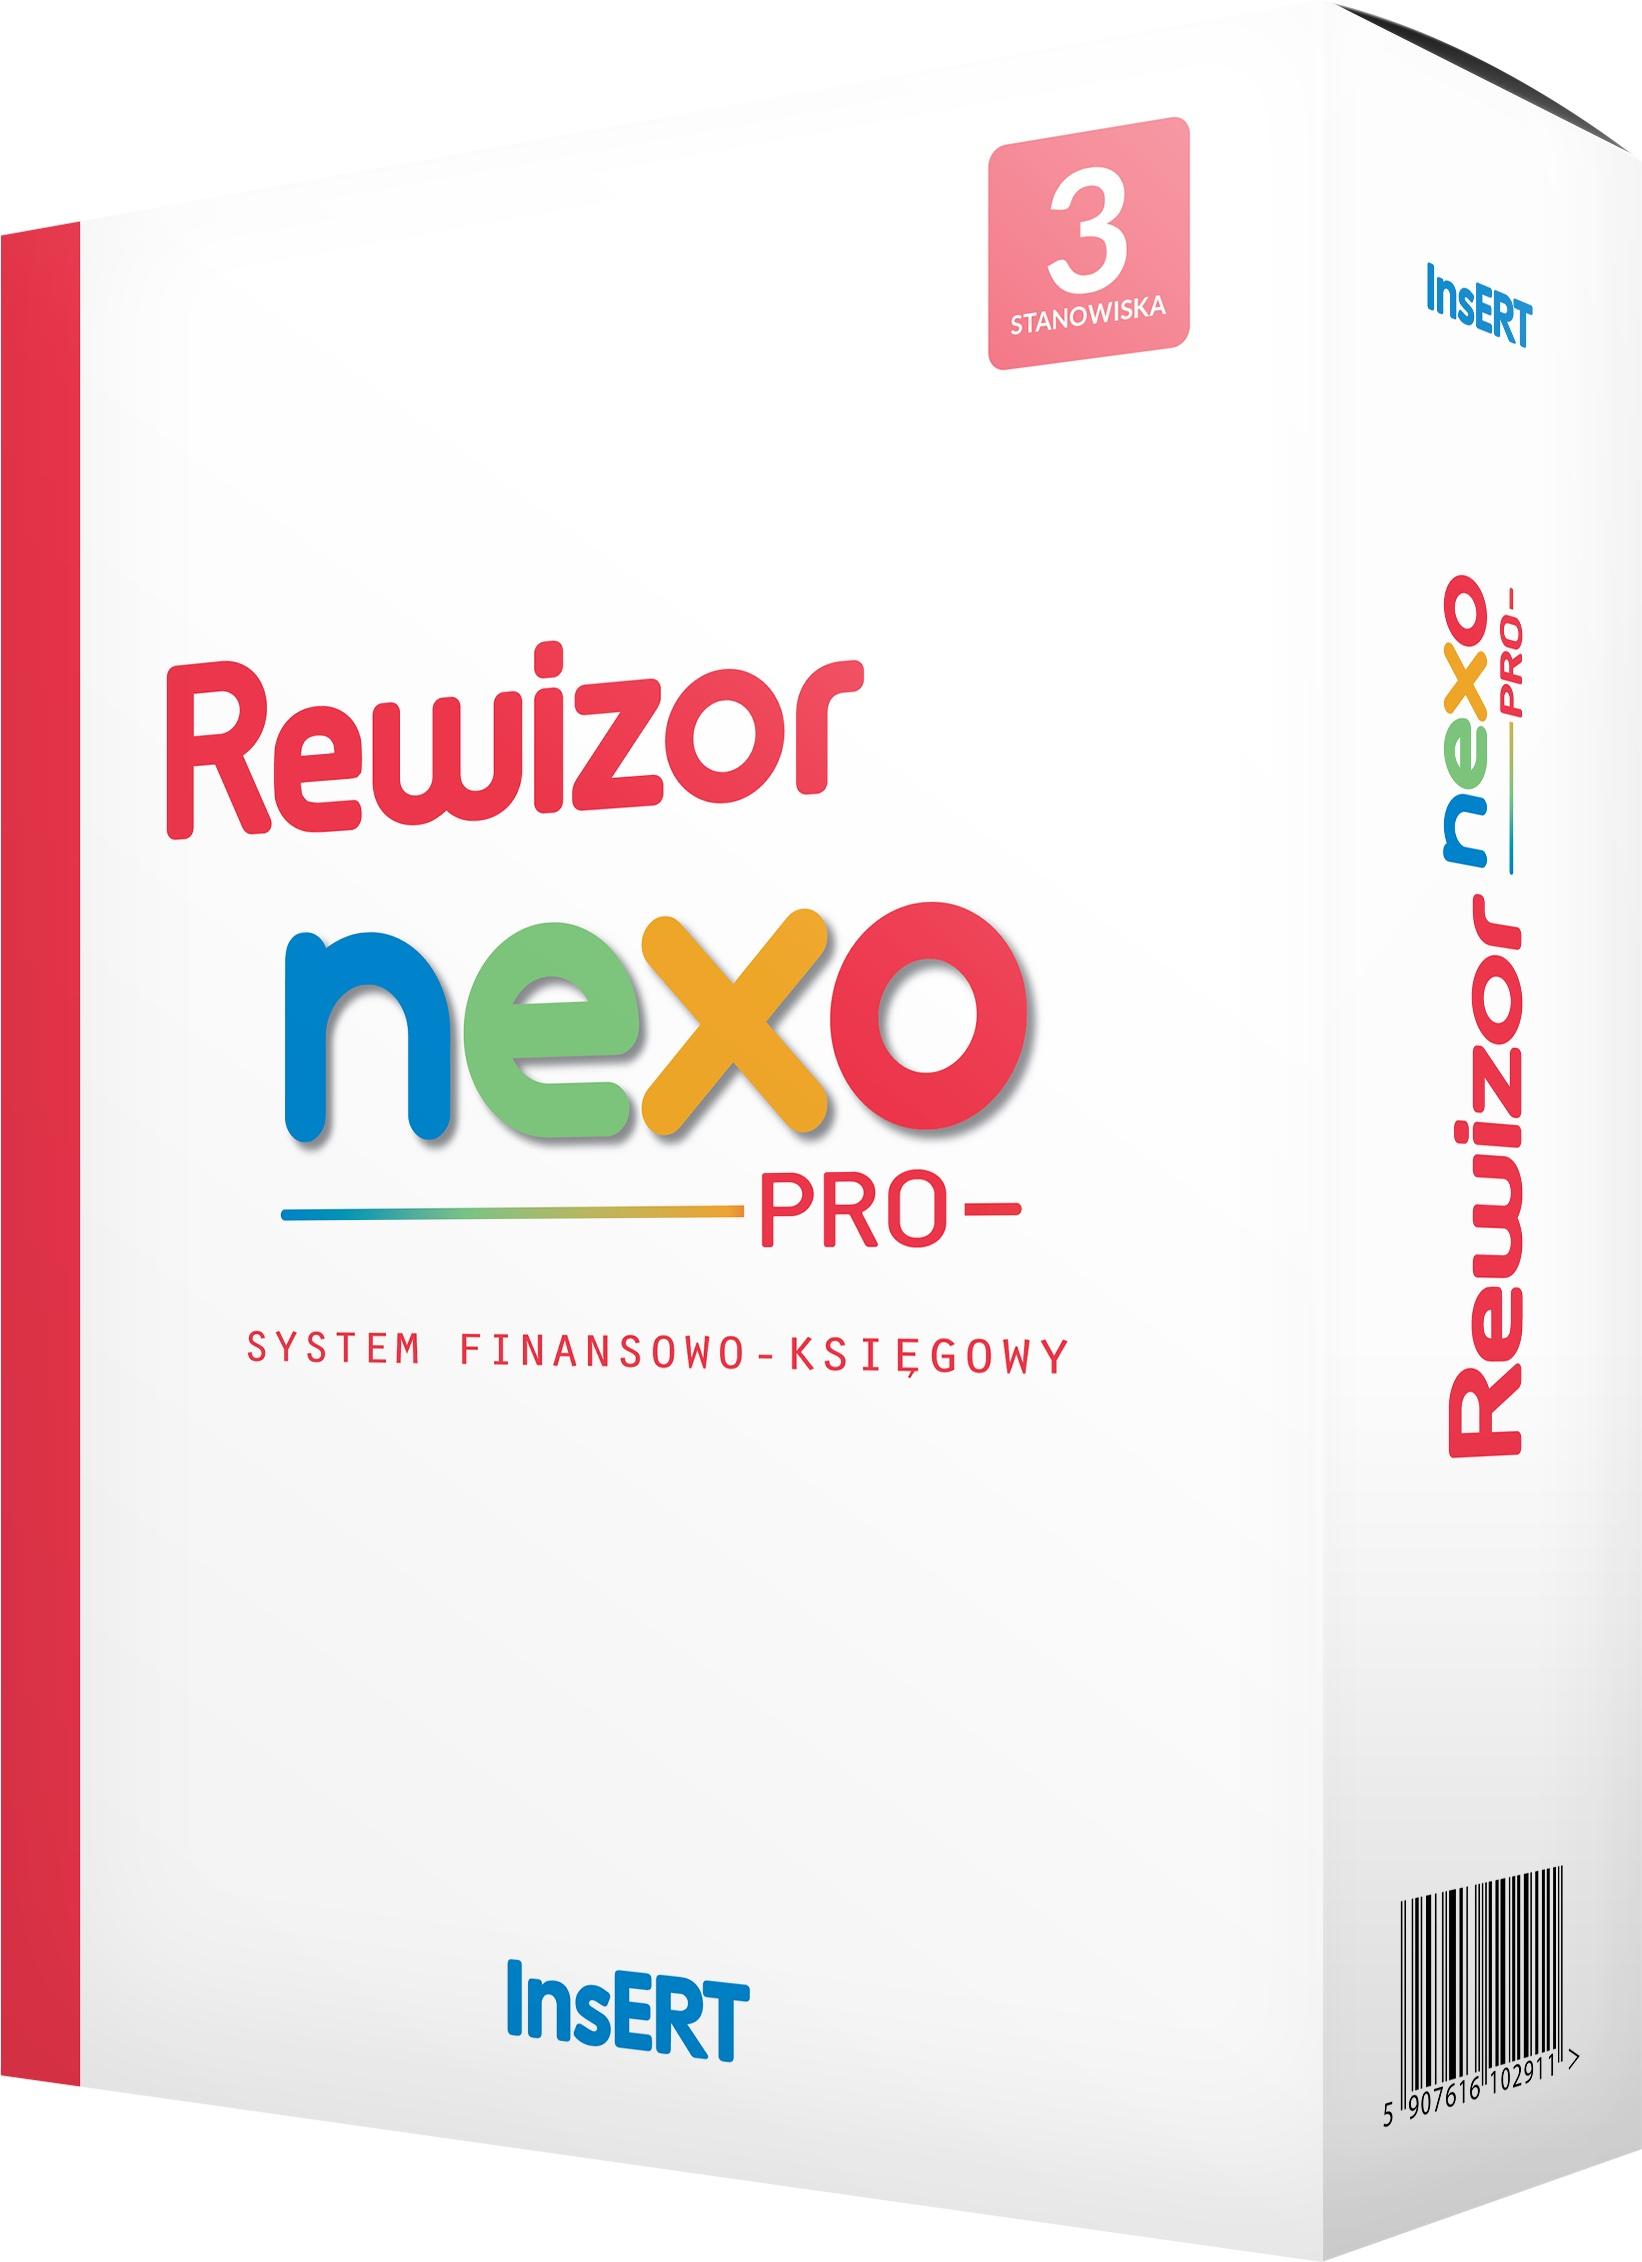 Pudełko programu Rewizor nexo PRO 3 stanowiska